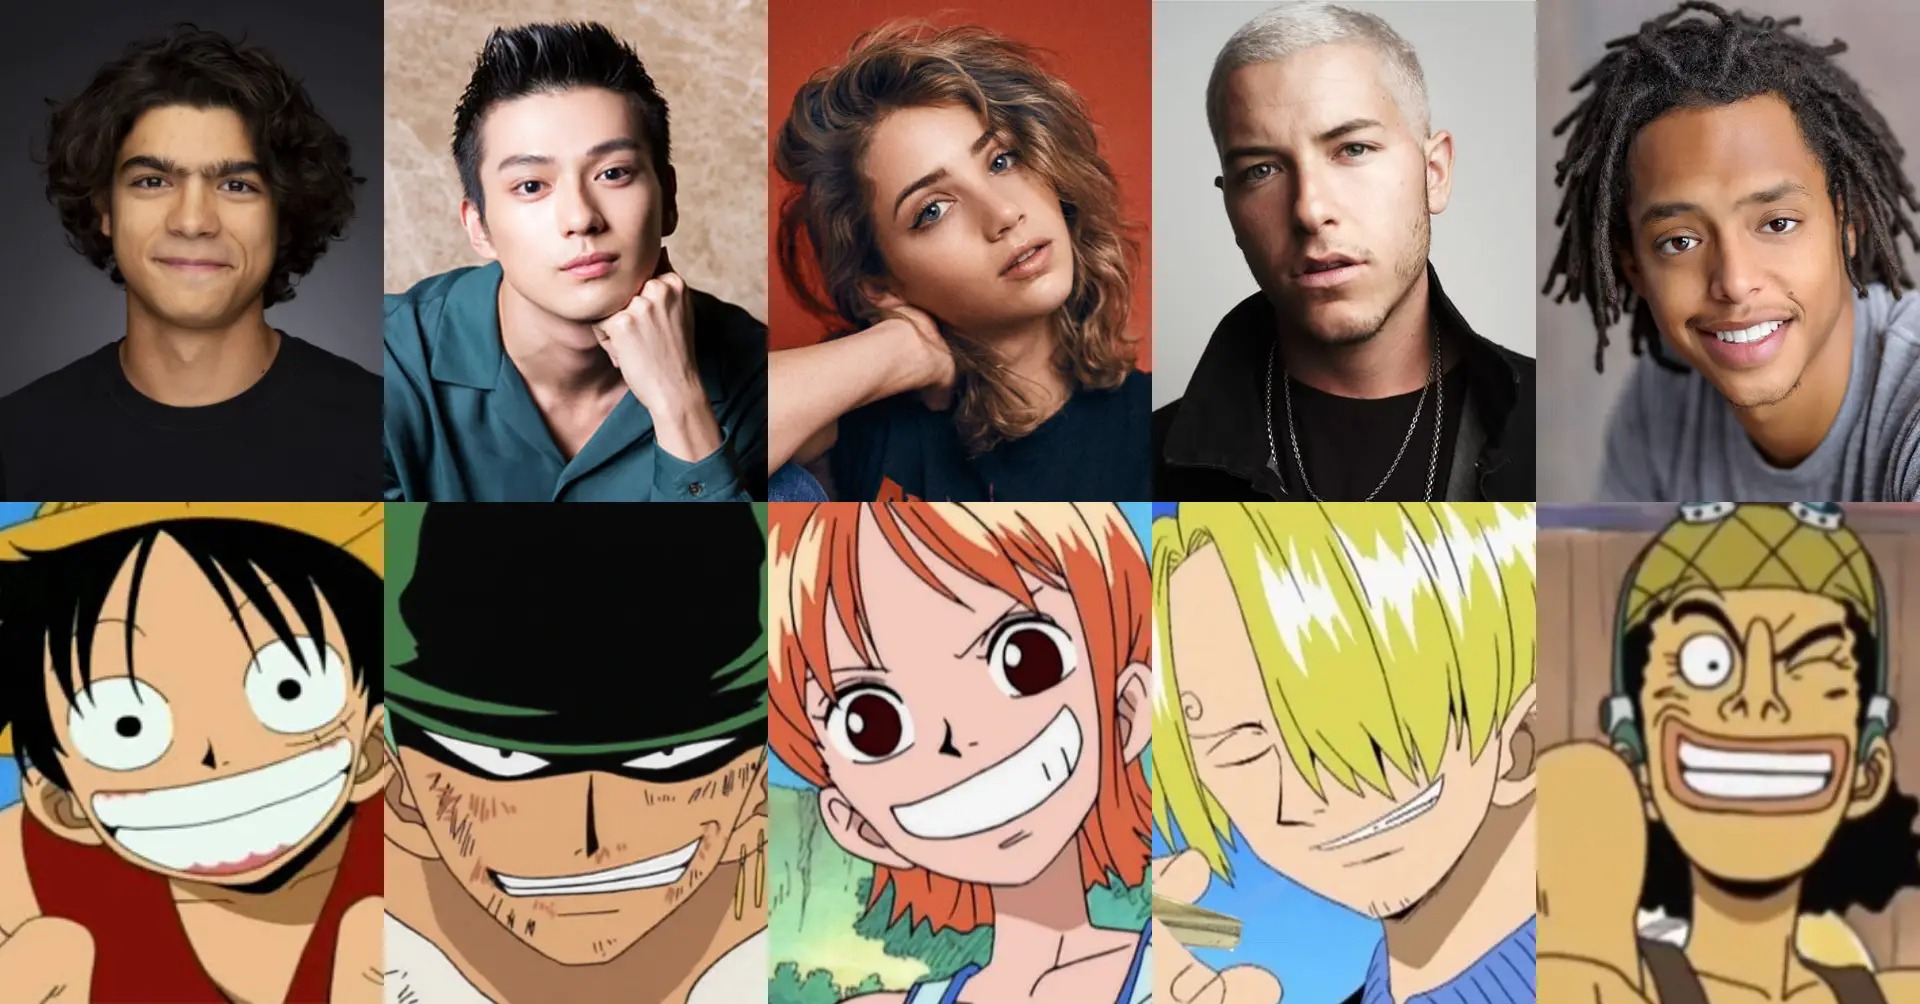 Personajes de One Piece y sus respectivos actores